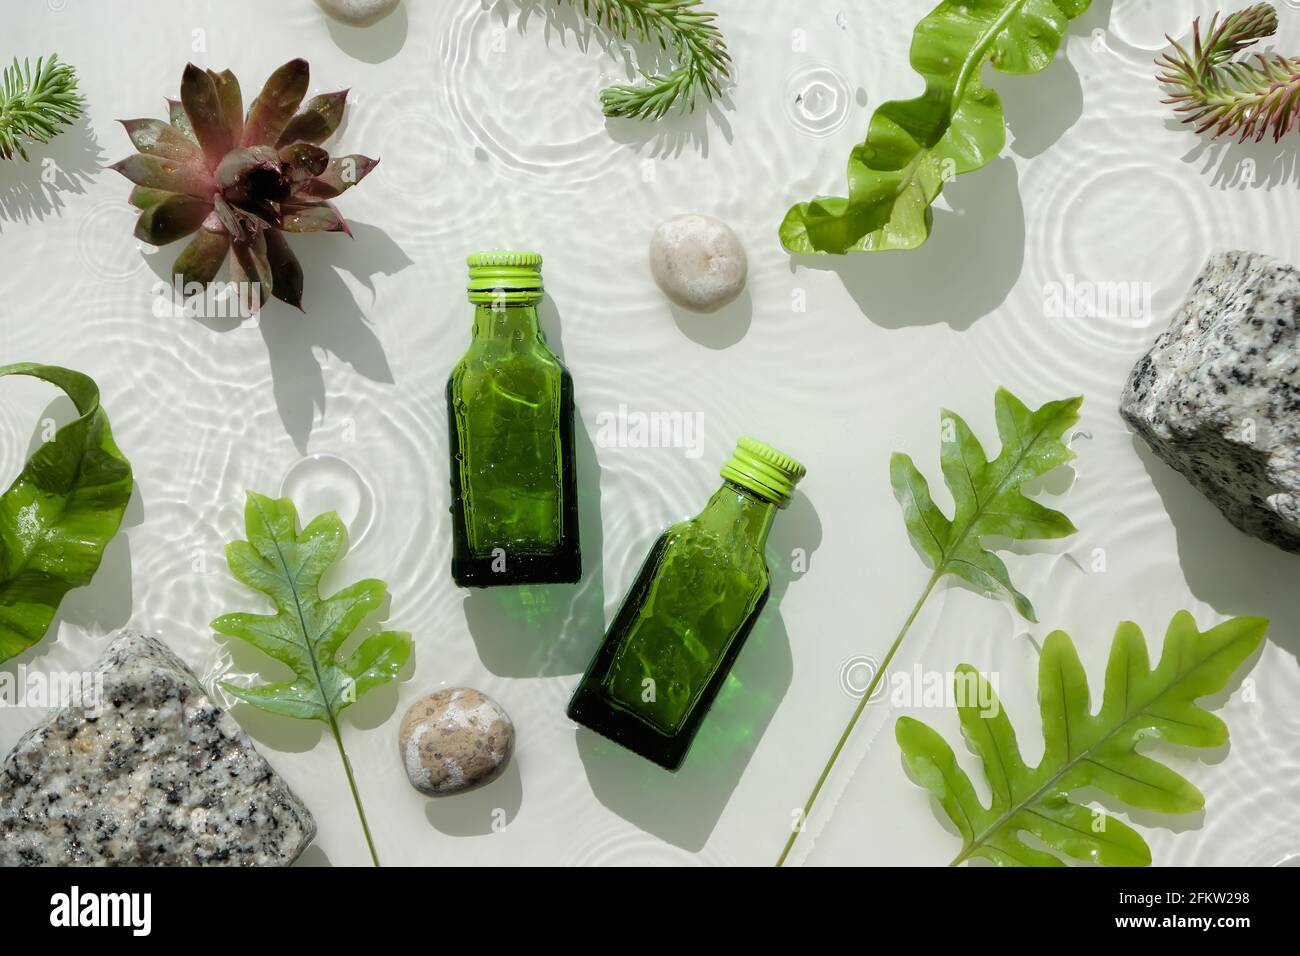 Wasser Hintergrund, kosmetische Hautpflege Feuchtigkeitscreme in grünen Flaschen. Dunkle Glasflaschen. Wasseroberfläche, Spritzer, Ringe, Granitsteine. Exotische Blätter Stockfoto